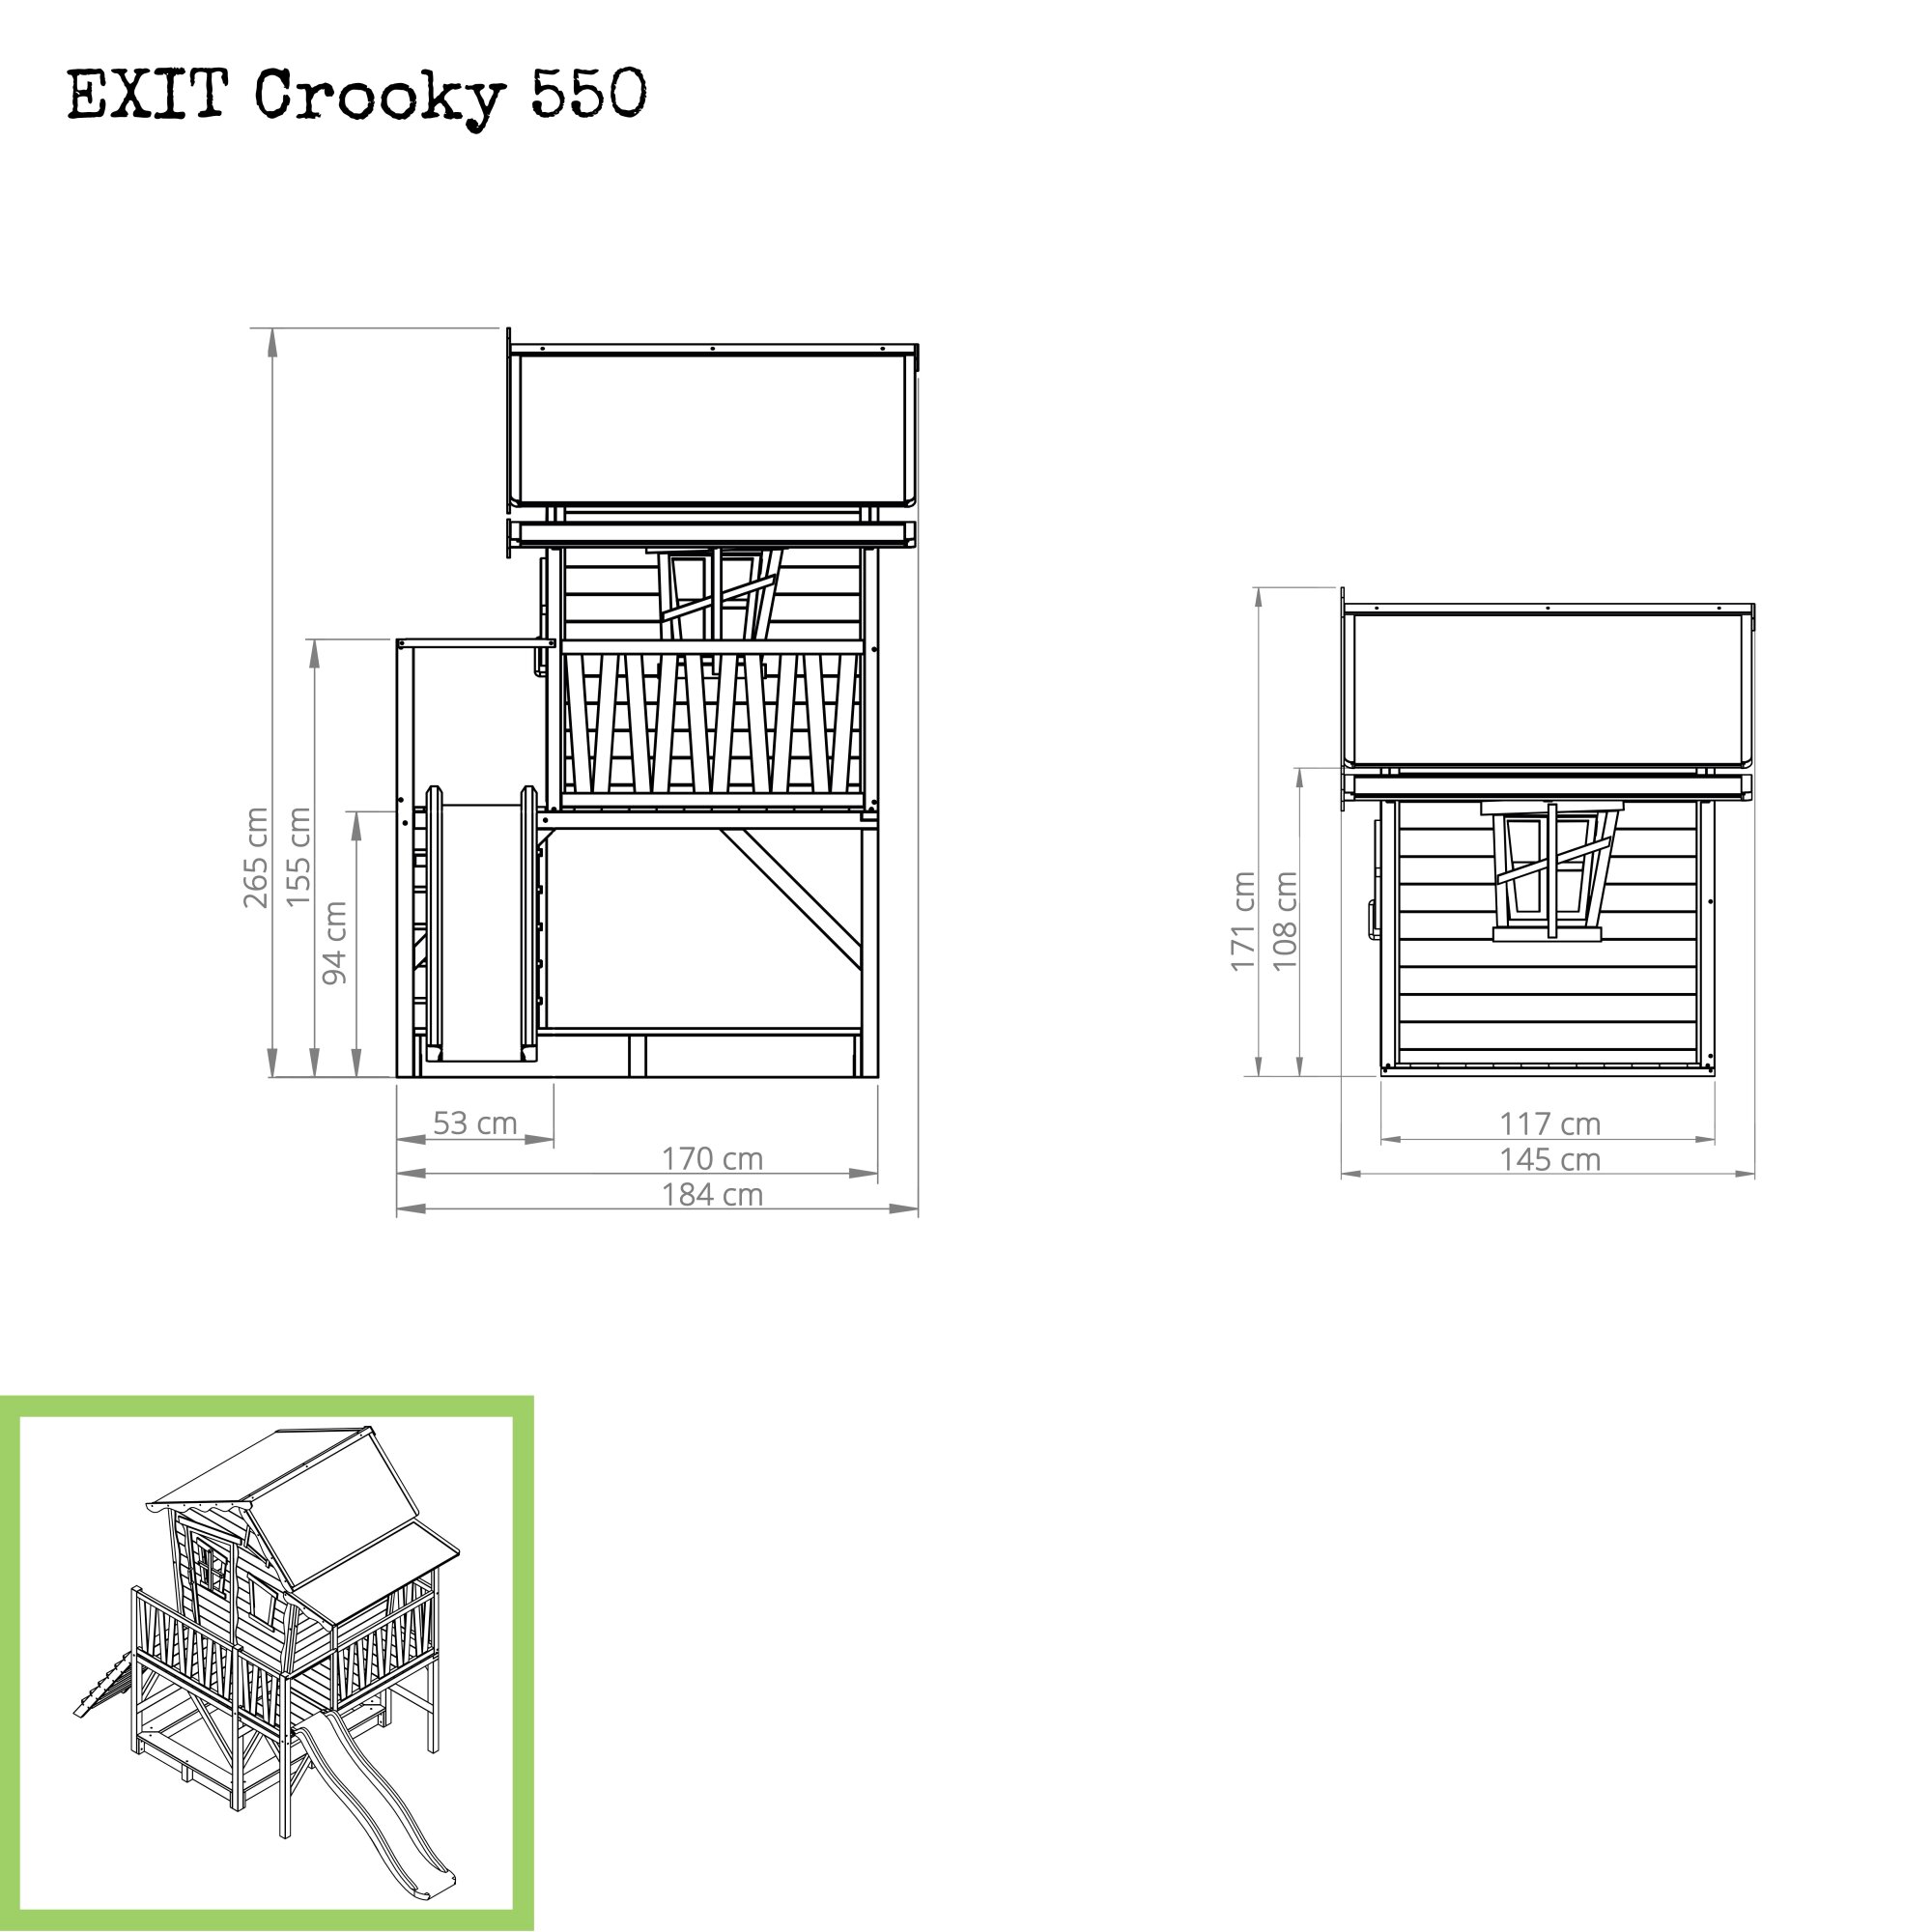 EXIT Crooky 550 Holzspielhaus graubeige Maße